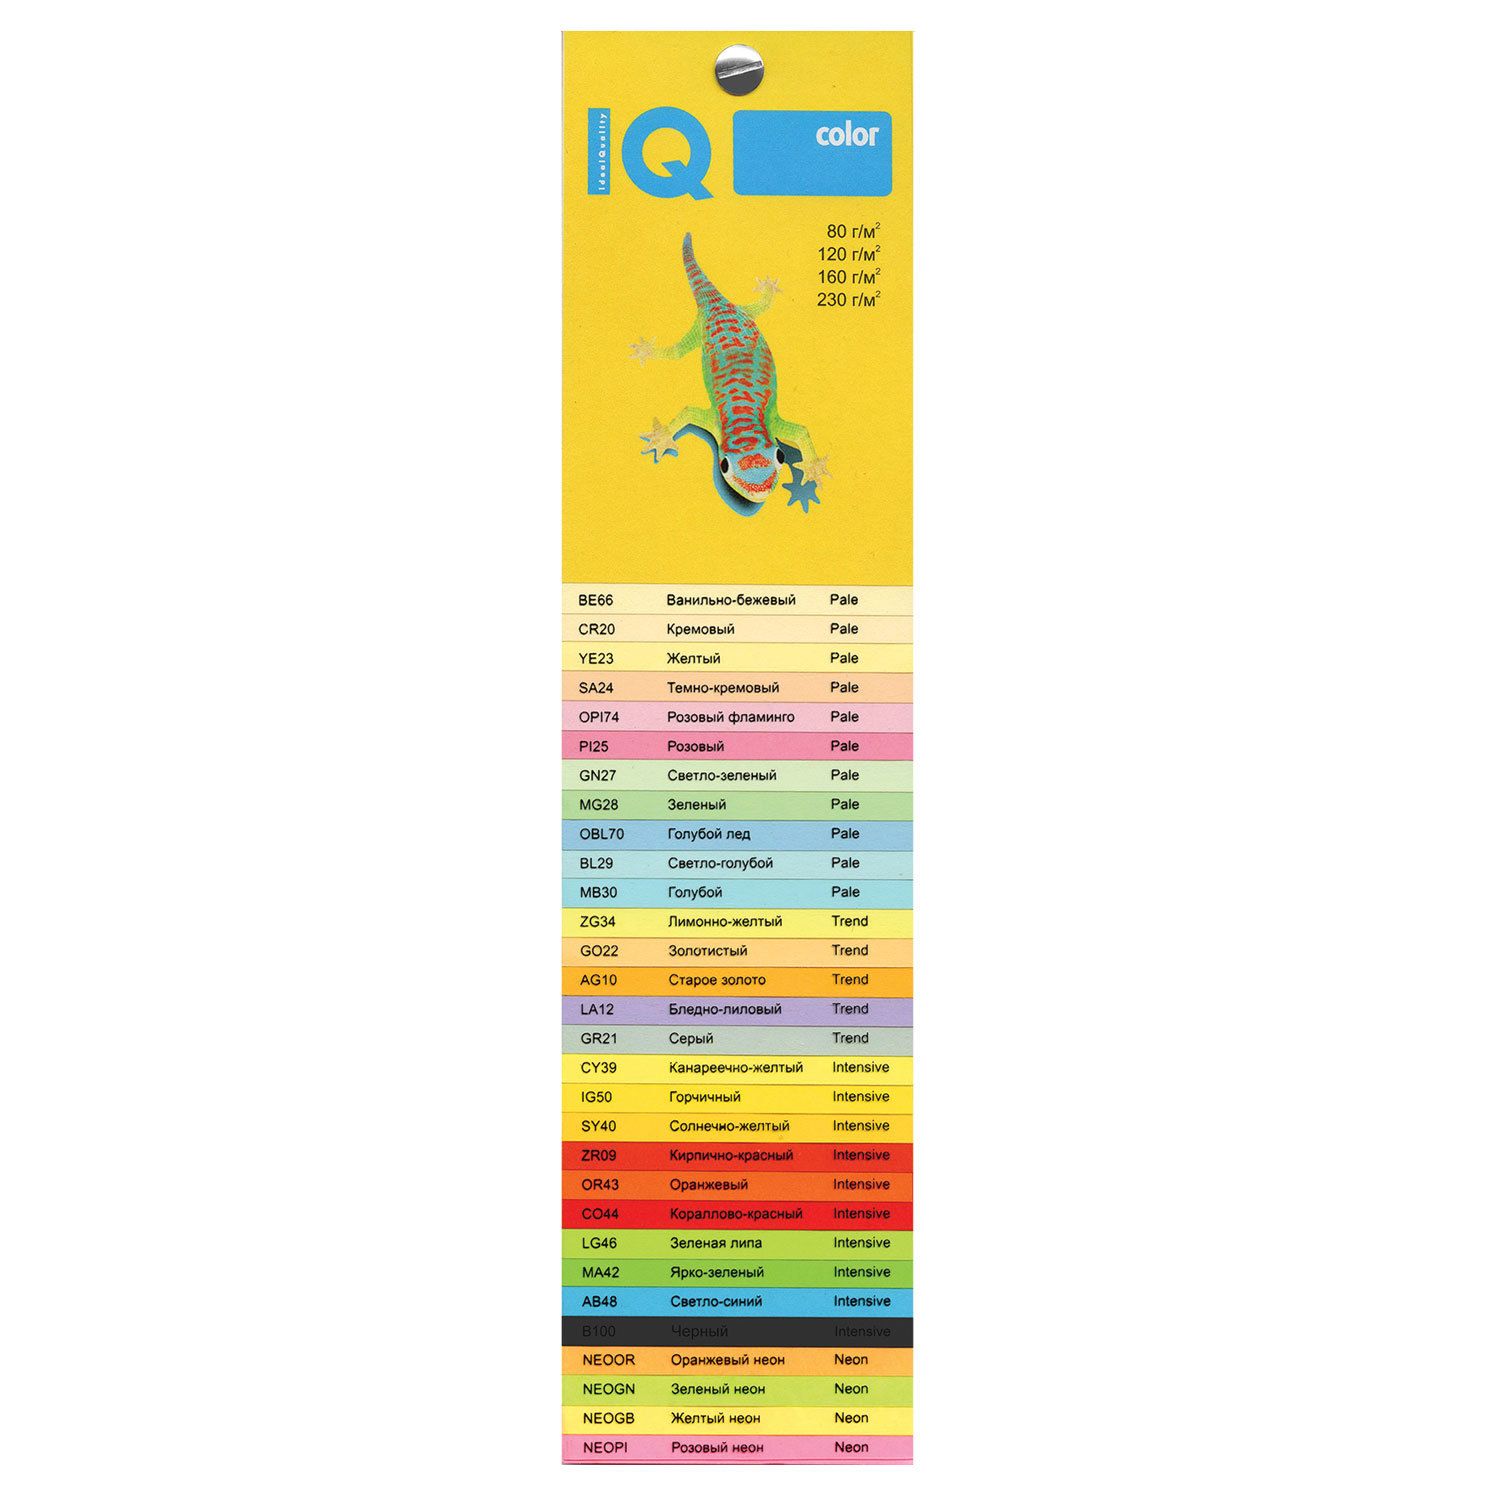 Бумага IQ (АйКью) color, А4, 160 г/м2, 250 л., умеренно-интенсив (тренд) бледно-лиловая, LA12